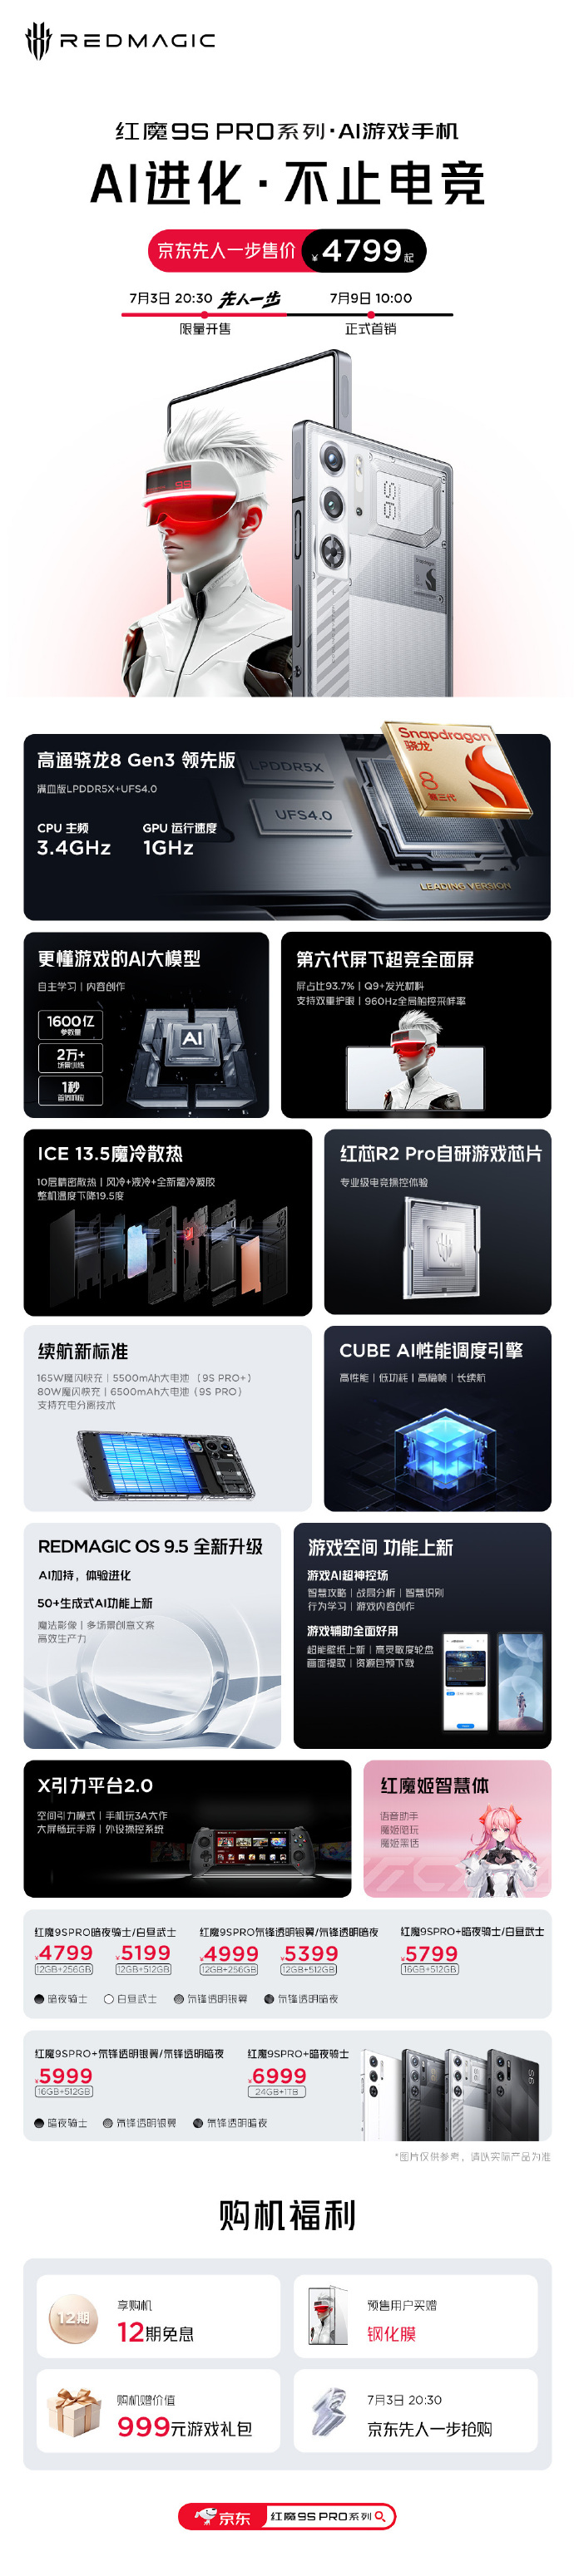 Seria 9S Pro jest oficjalna...(Źródło: RedMagic via Weibo)